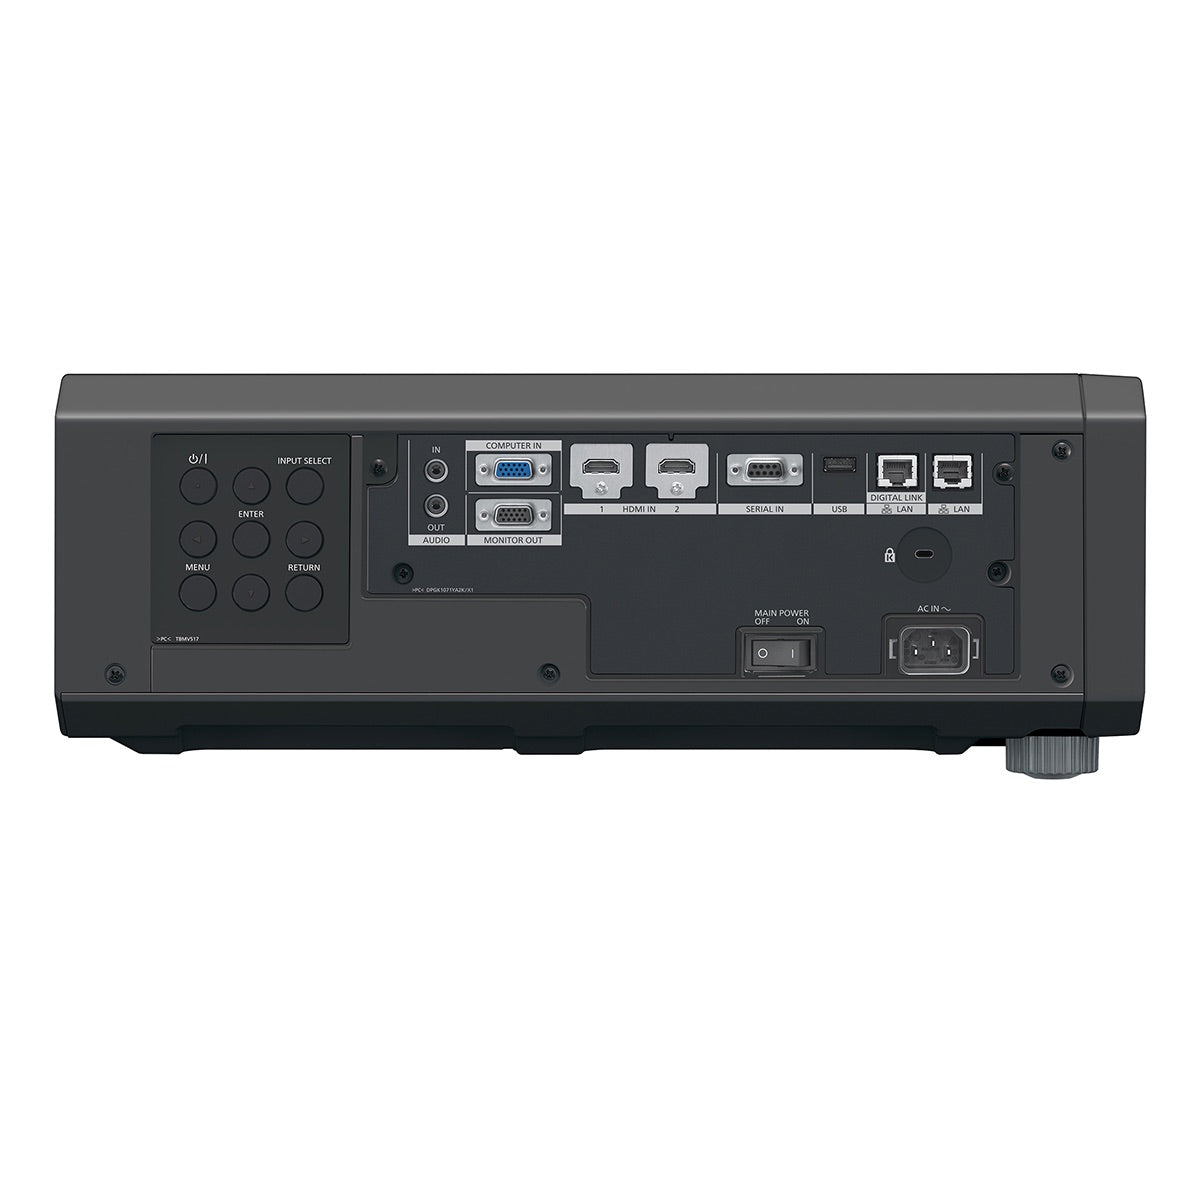 Panasonic PT-FRQ50 - 1-Chip DLP 4K Laser Projector, black, side